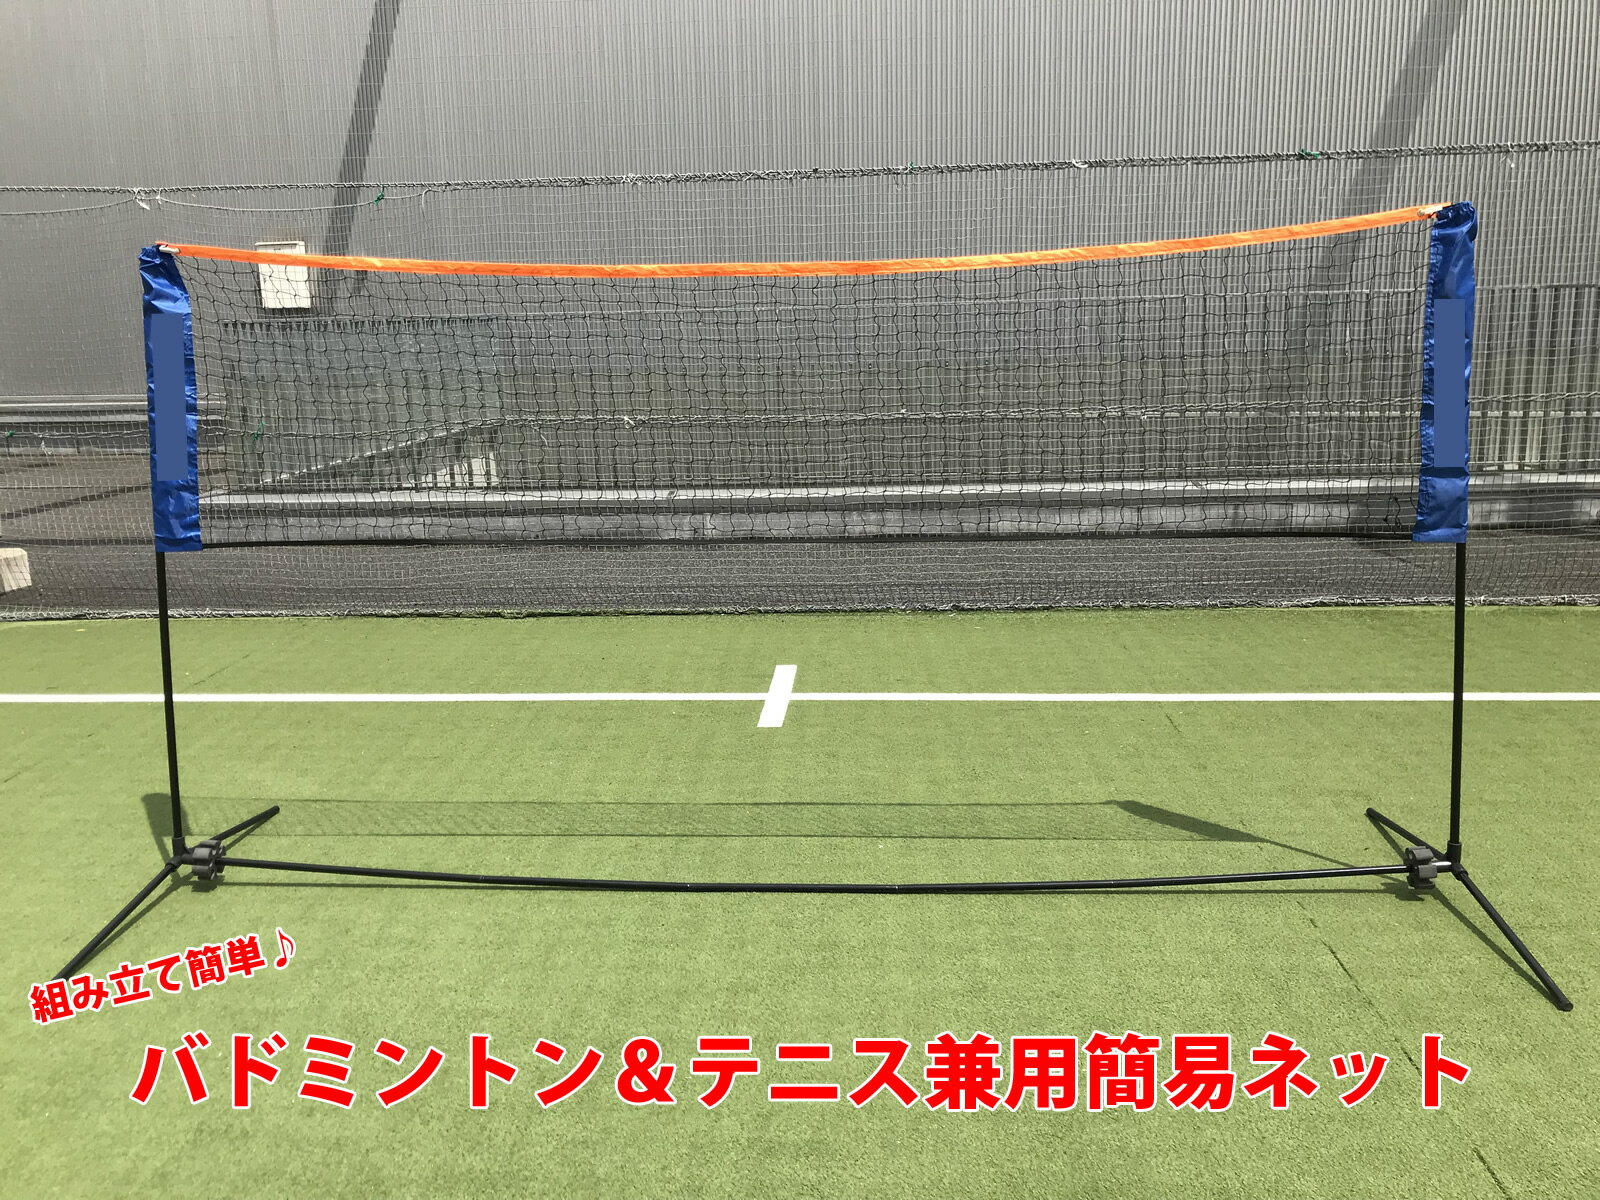 バドミントン テニス 兼用簡易ネット 練習 収納ケース付き 組み立て簡単